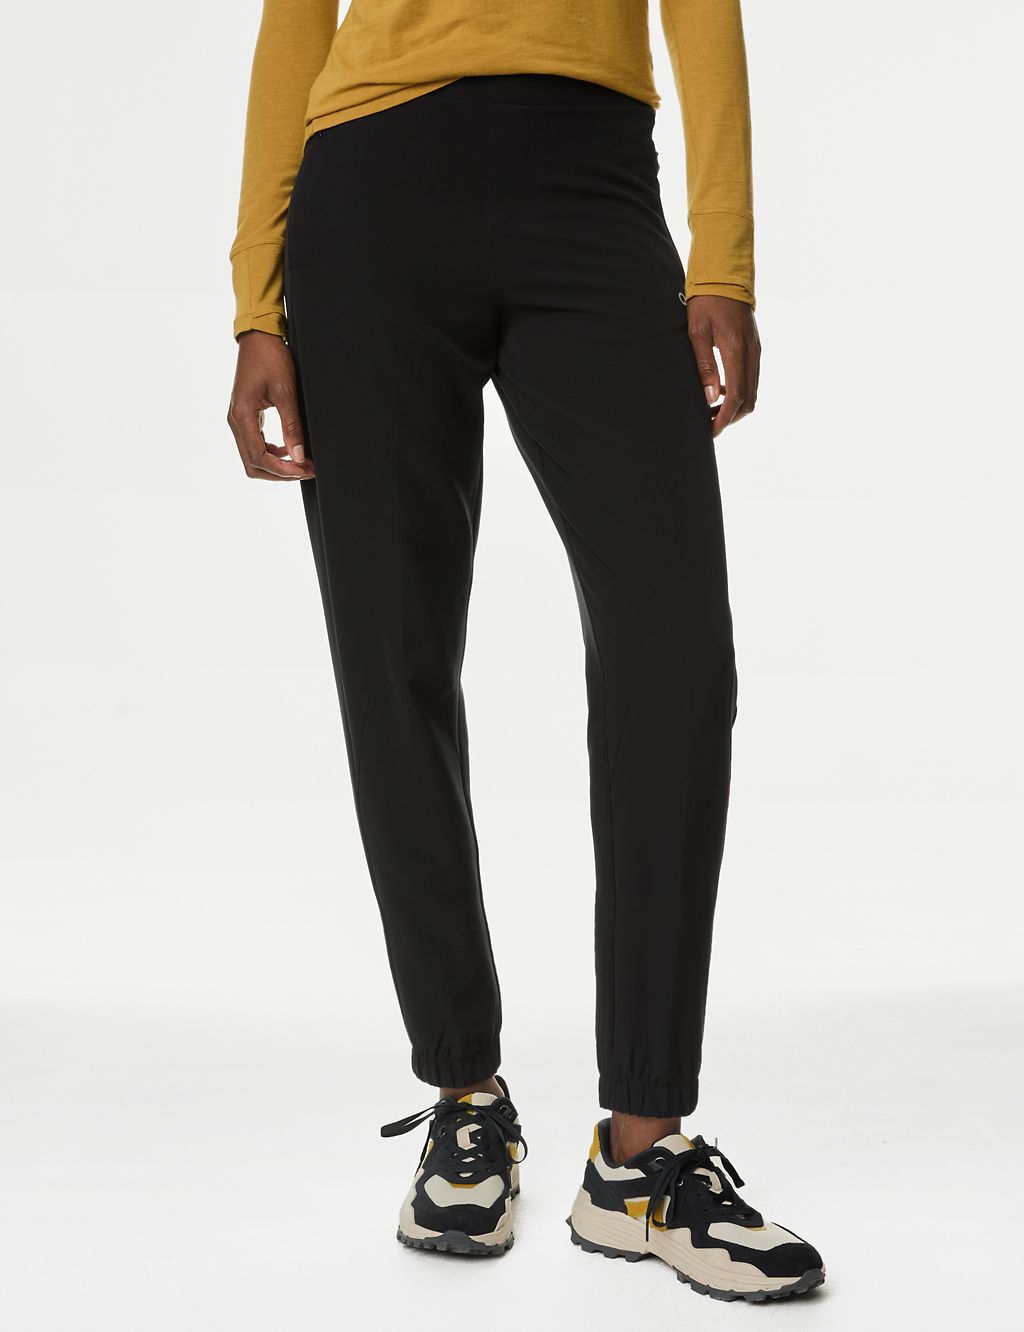 Stormwear™ Slim Fit 7/8 Walking Trousers 2 of 5